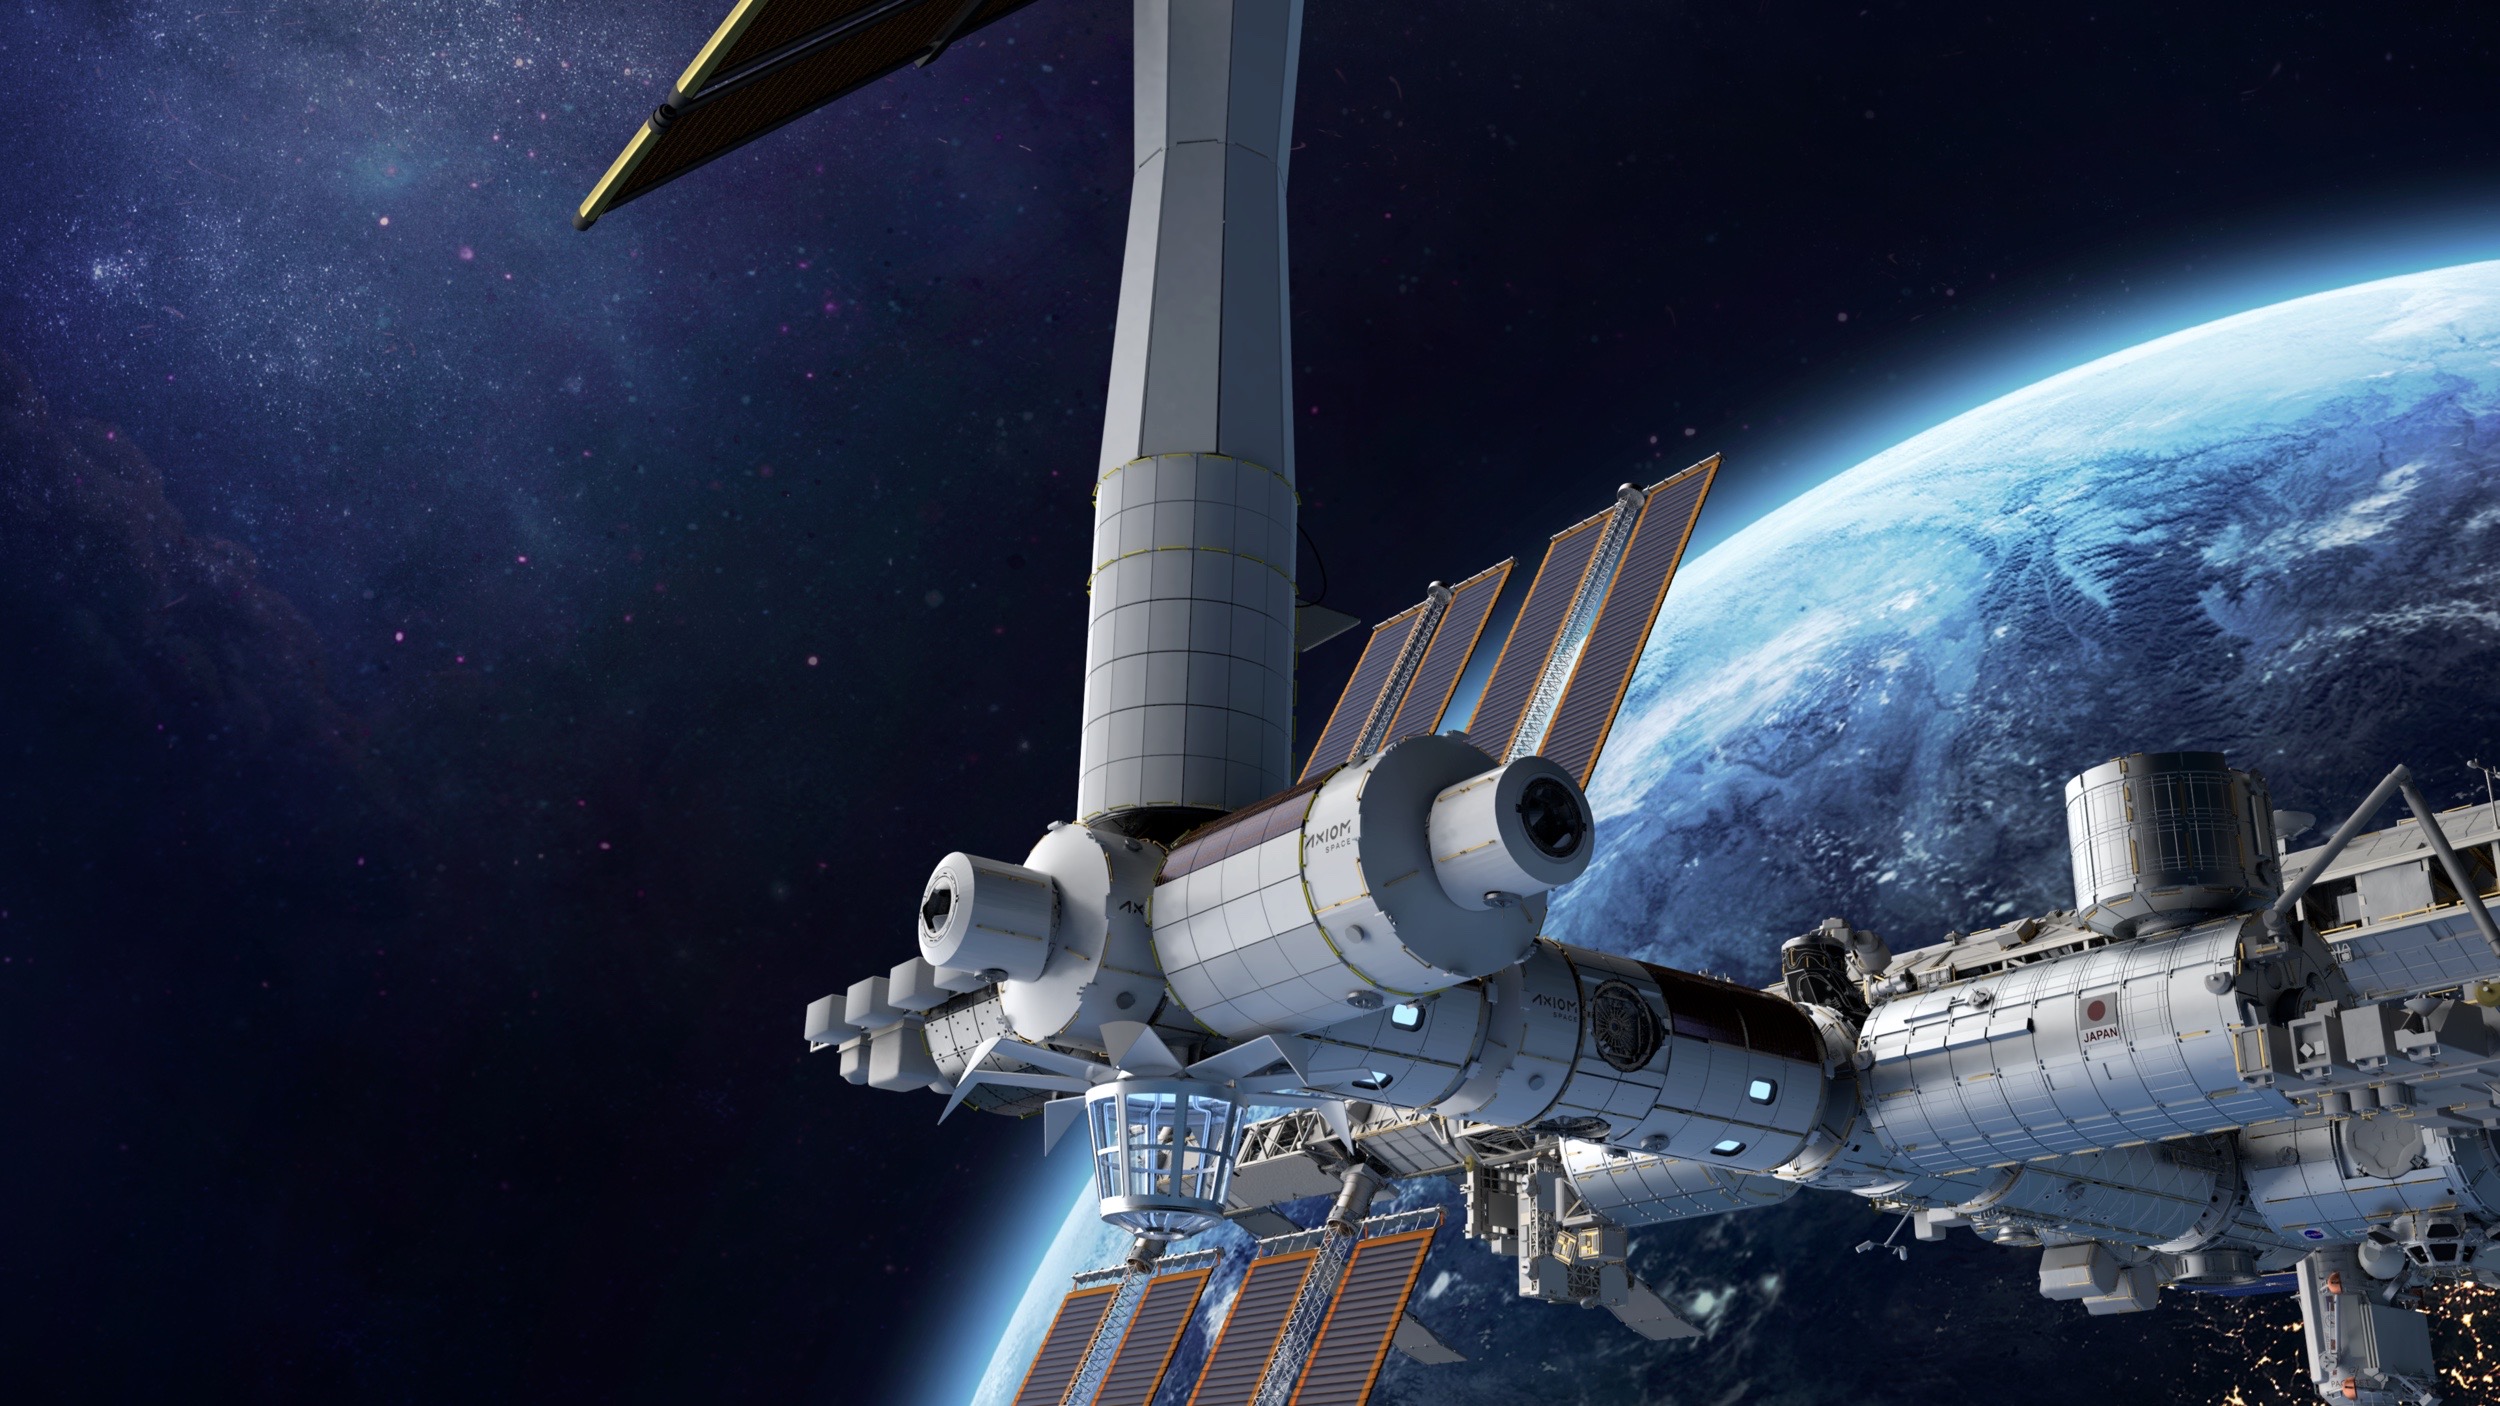 Художественная иллюстрация космической станции, которую компания Axiom Space из Хьюстона планирует построить на околоземной орбите.